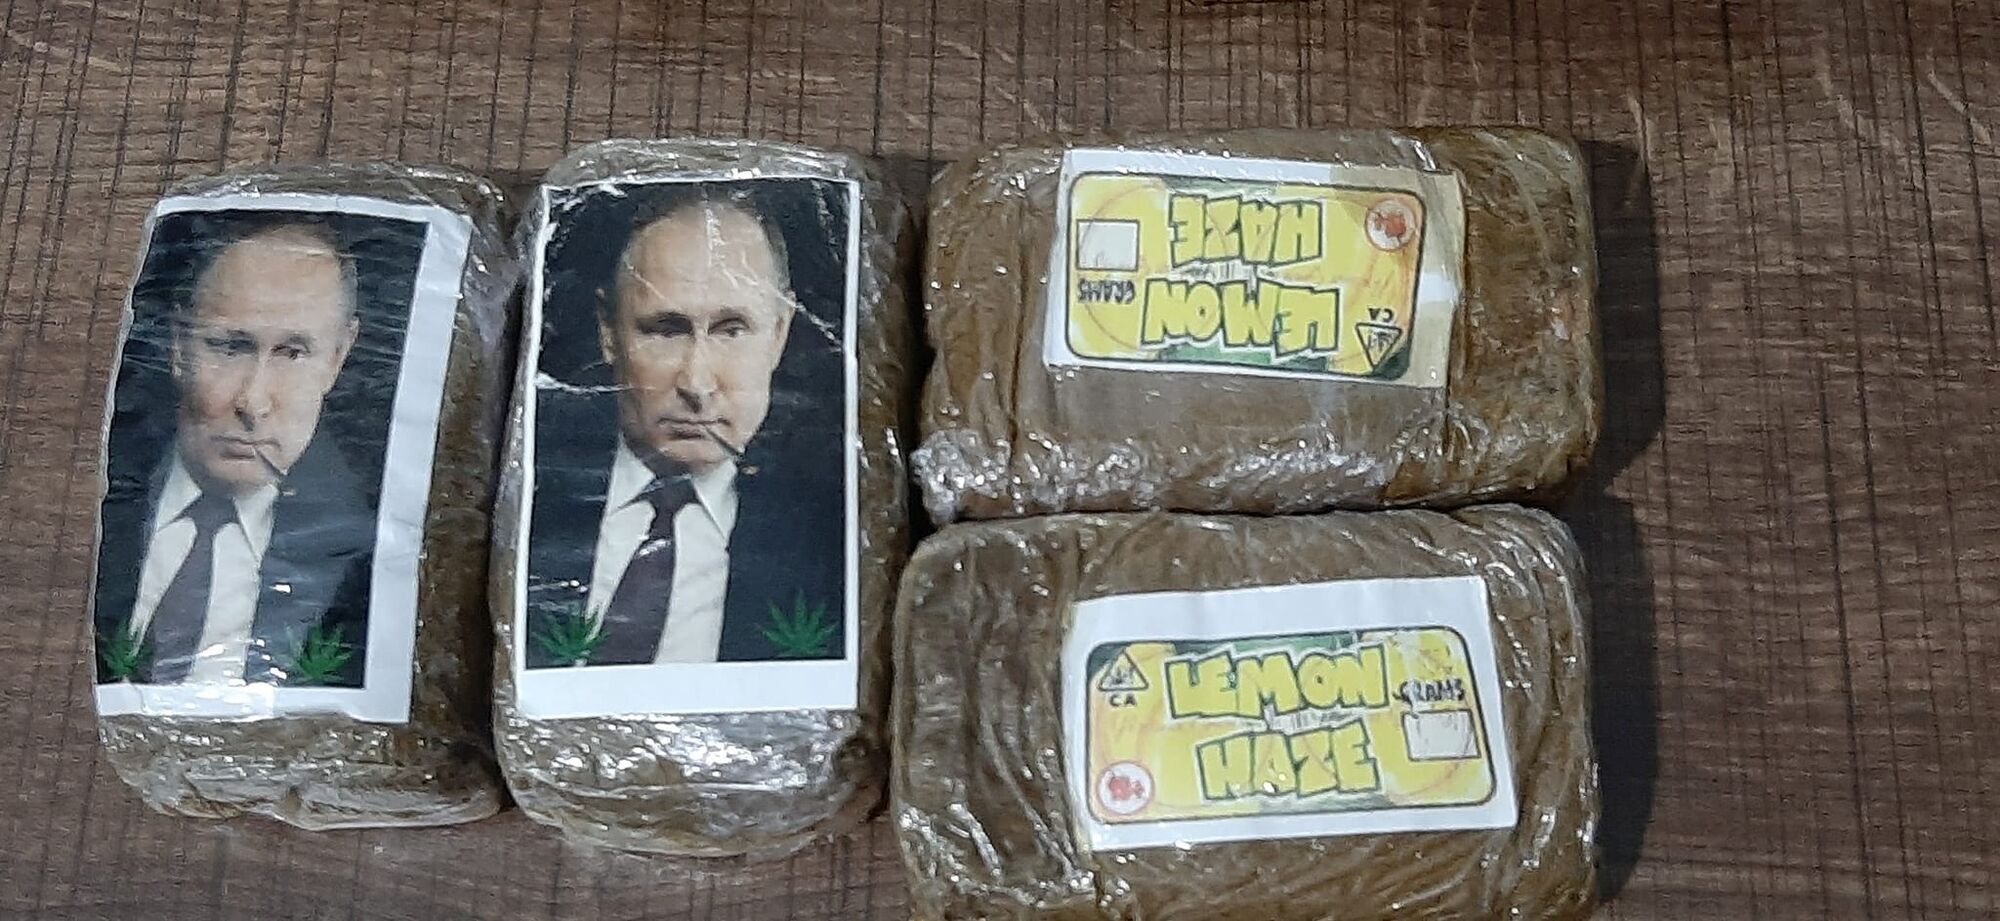 На ней изображено фото Путина